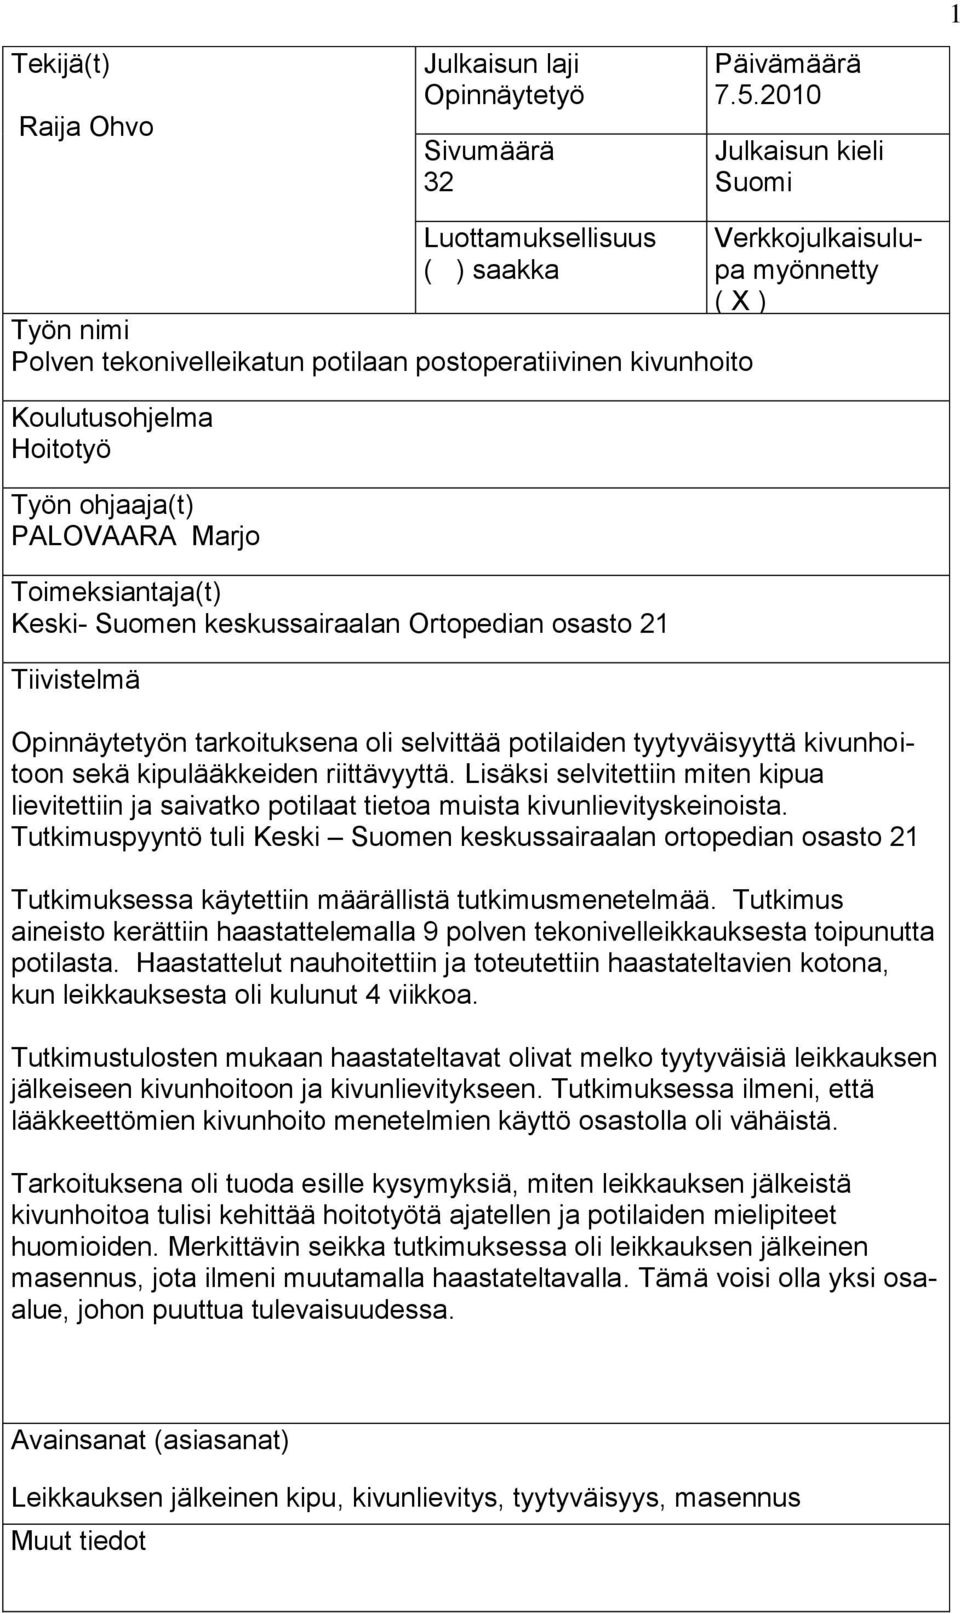 Toimeksiantaja(t) Keski- Suomen keskussairaalan Ortopedian osasto 21 Tiivistelmä Verkkojulkaisulupa myönnetty ( X ) Opinnäytetyön tarkoituksena oli selvittää potilaiden tyytyväisyyttä kivunhoitoon